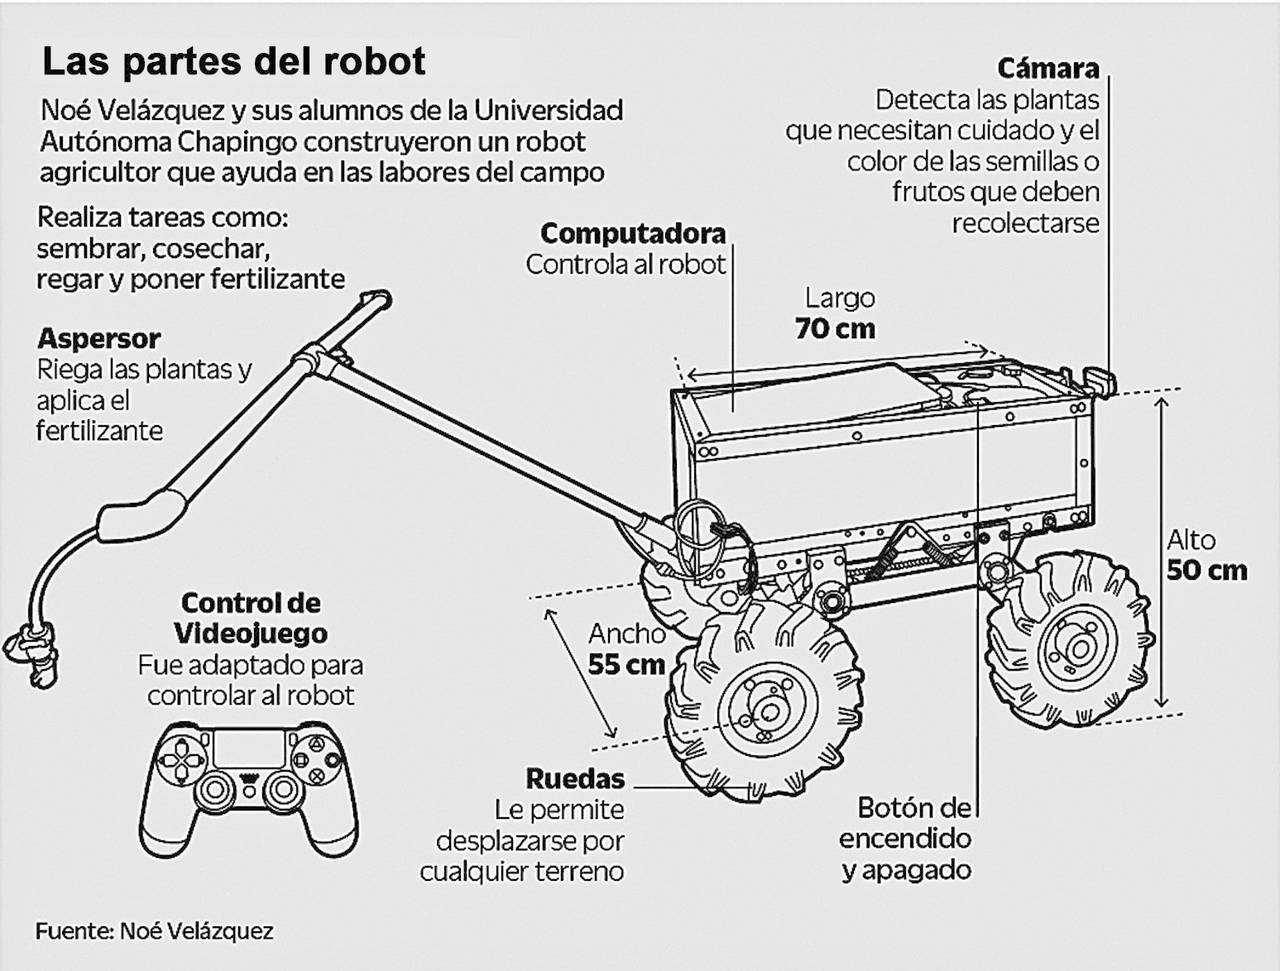 Objetivo. Este robot ayuda en las tareas del campo, como sembrar, cosechar, regar las plantas y poner fertilizante. (EL UNIVERSAL)